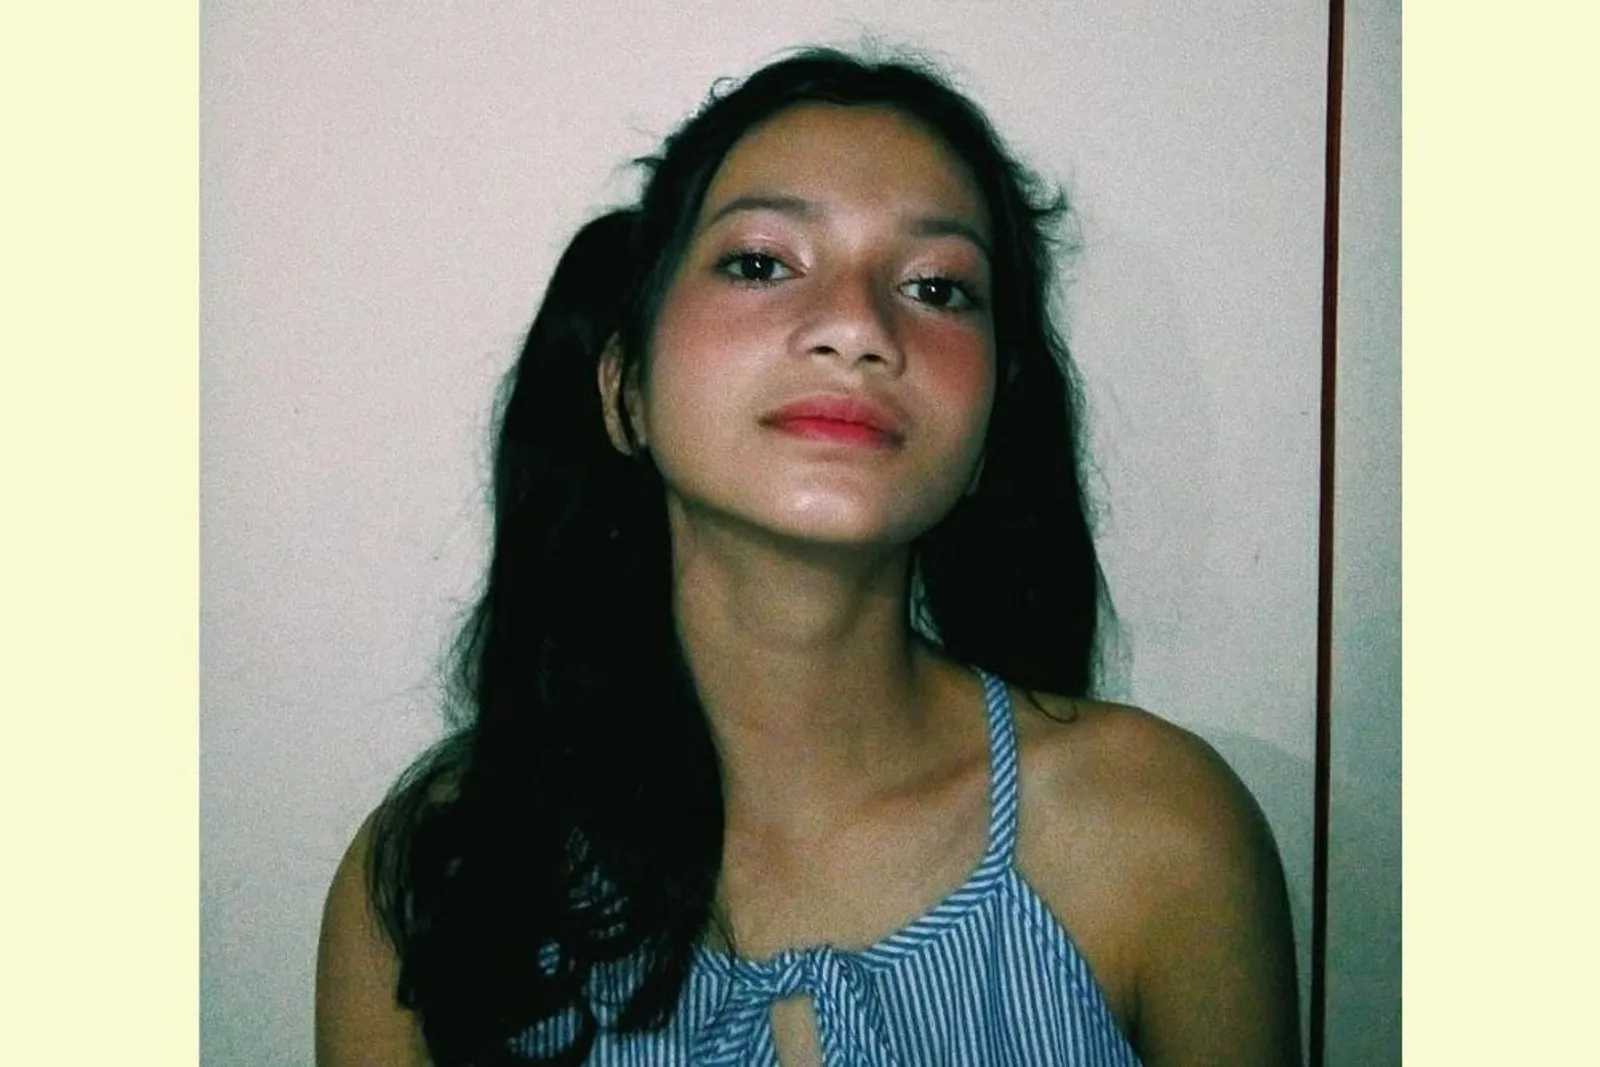 Intip 7 Pesona Safira Ratu Sofya, Aktris 16 Tahun yang Lagi Hits 